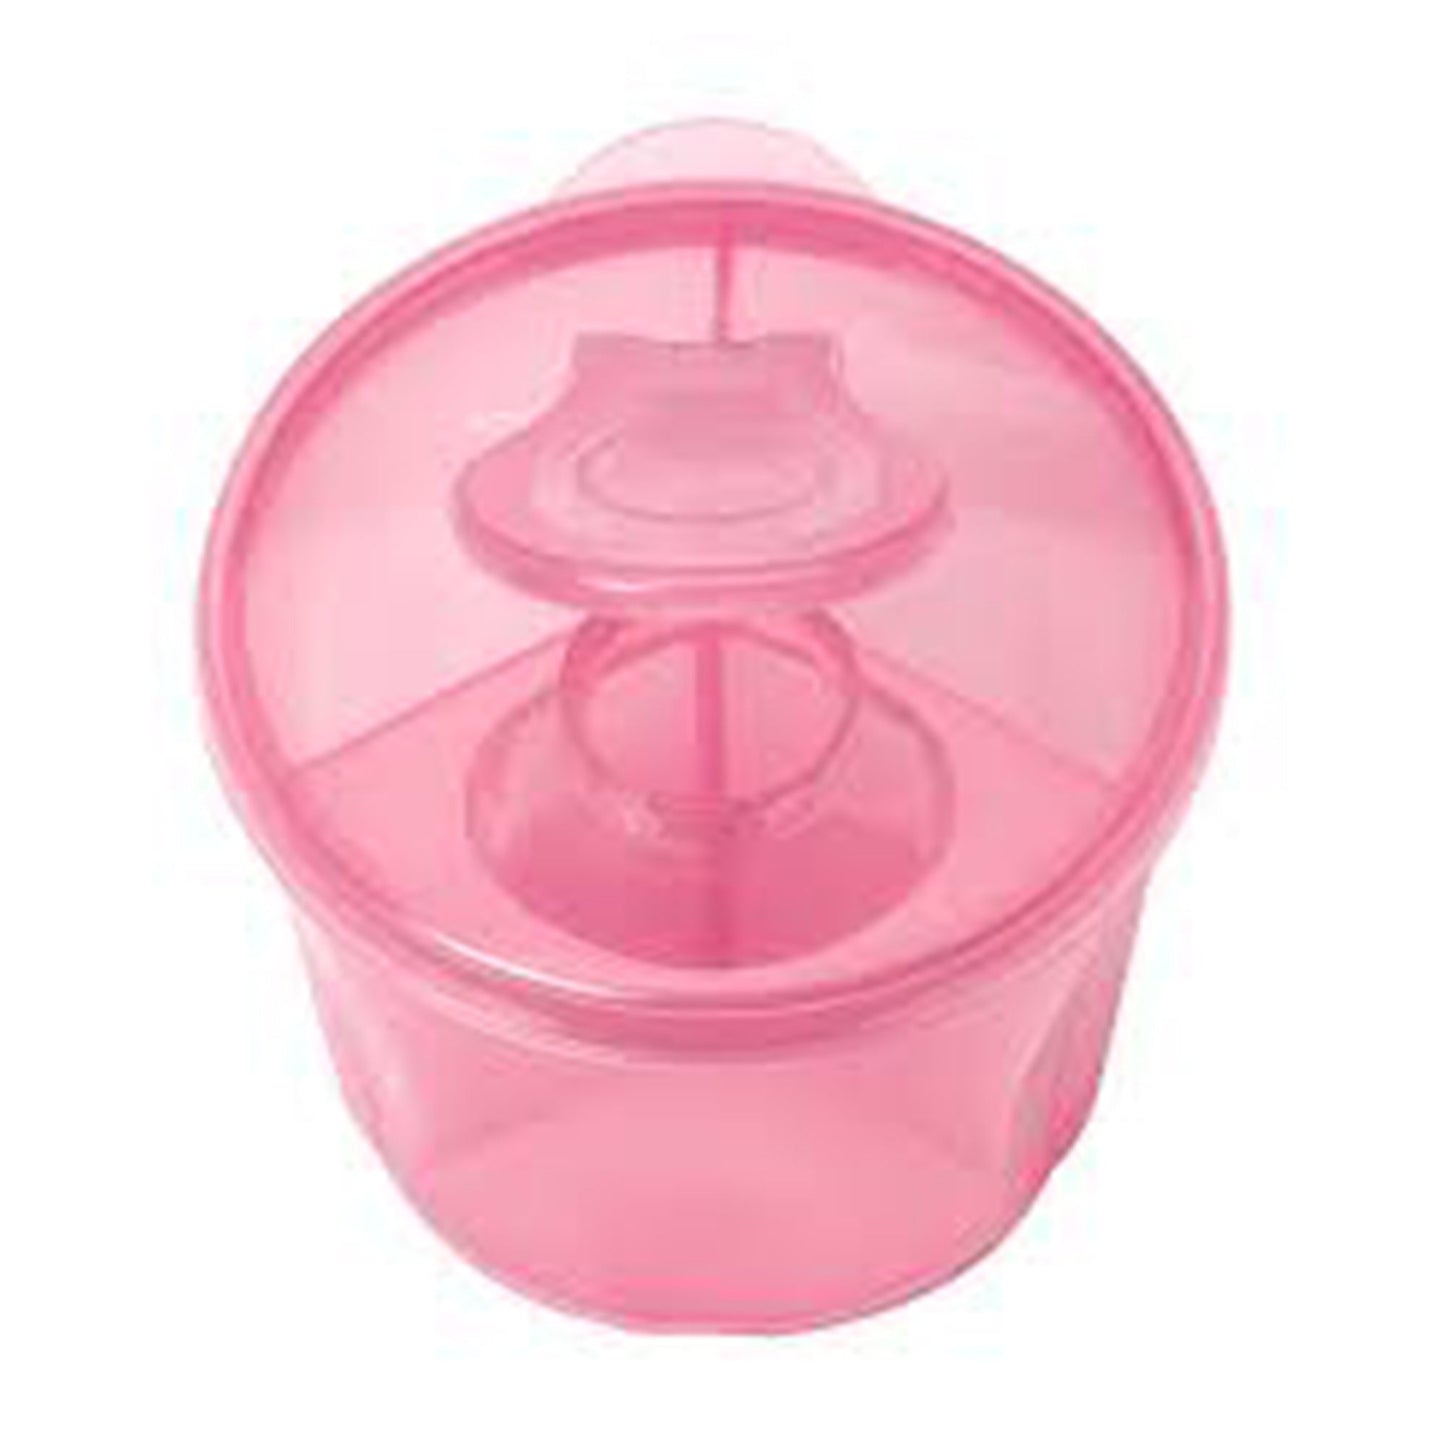 Dr. Brown Milk Powder Dispenser || Fashion-Pink || Birth+ to 24months - Toys4All.in